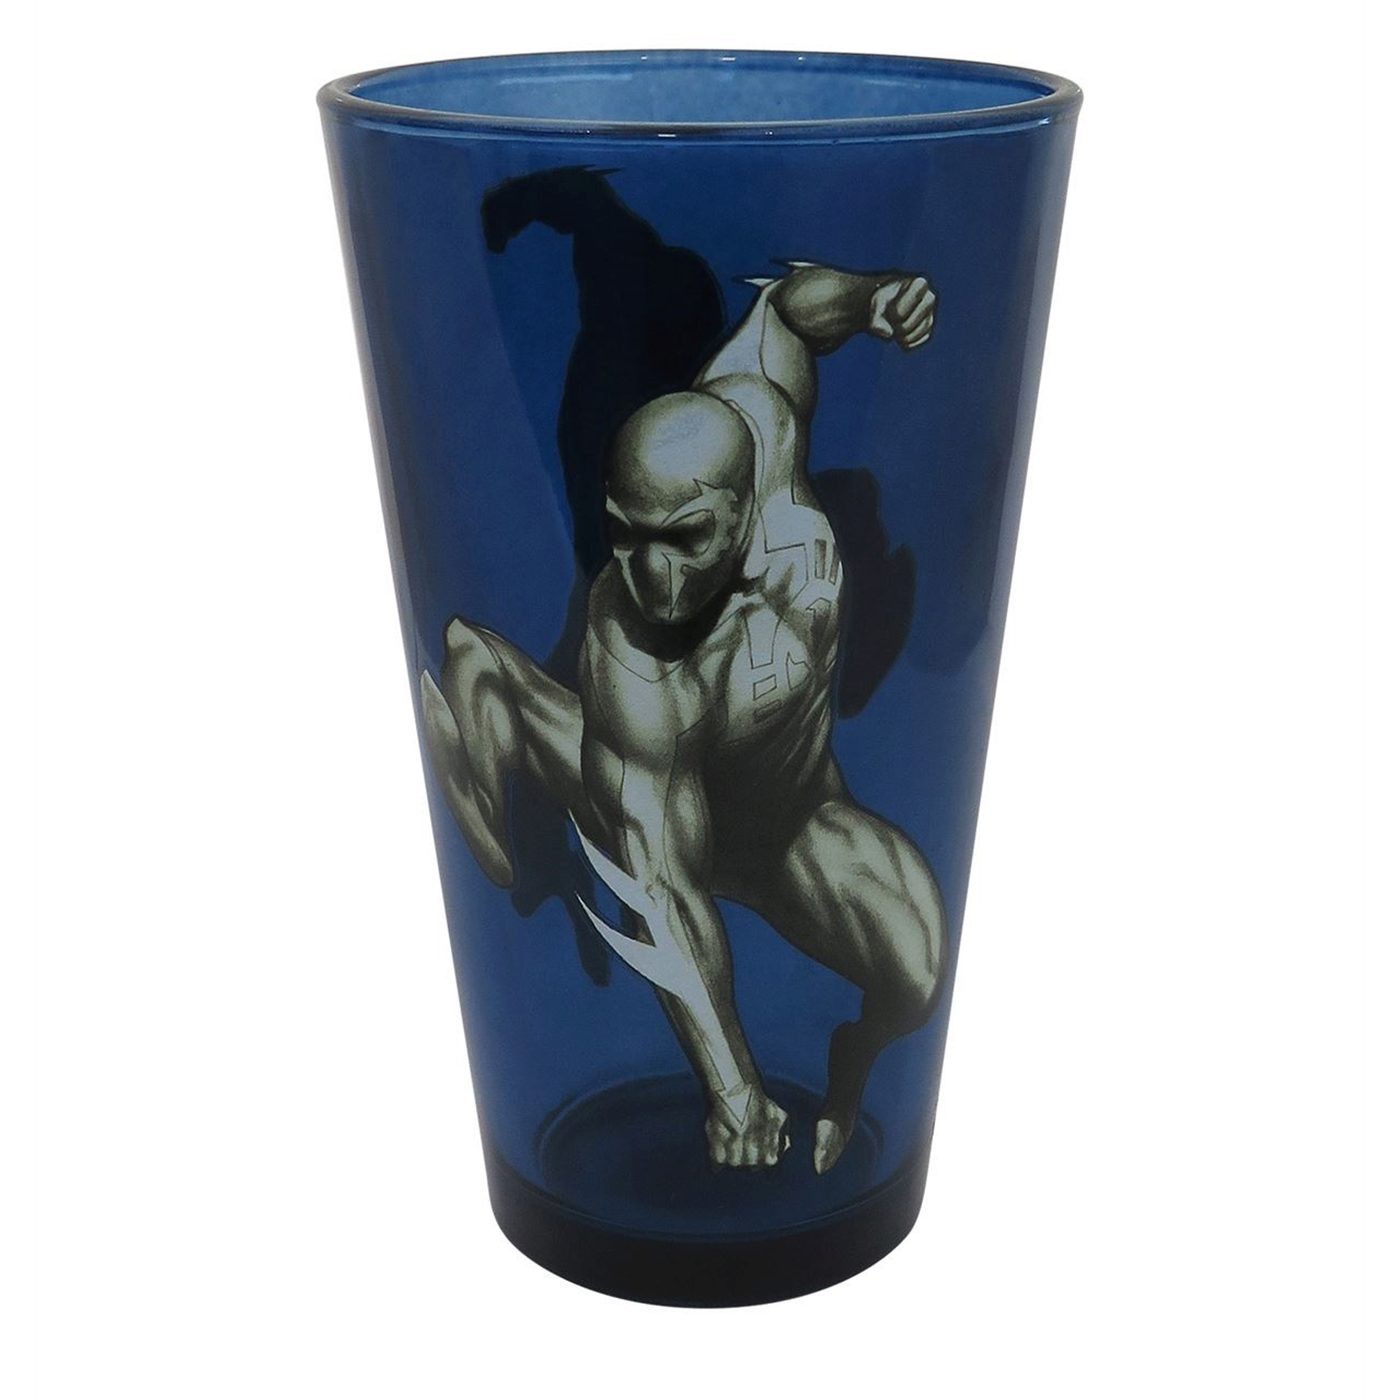 Spider-Man 2099 Blue Pint Glass